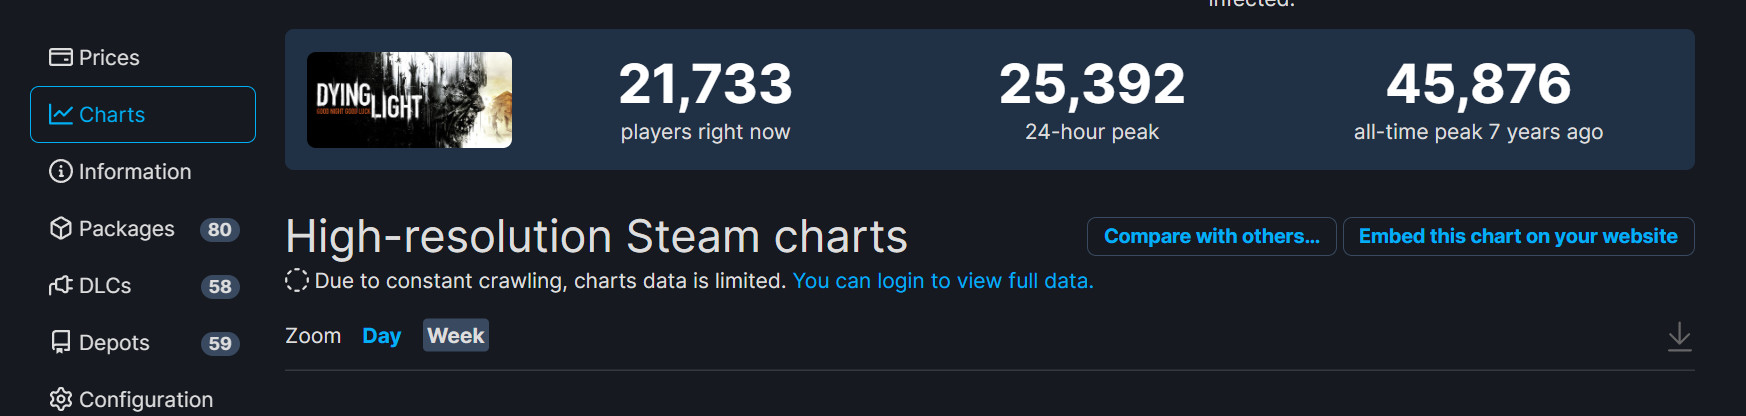 《垂死之光2》多半好評 Steam在線峰值超16萬